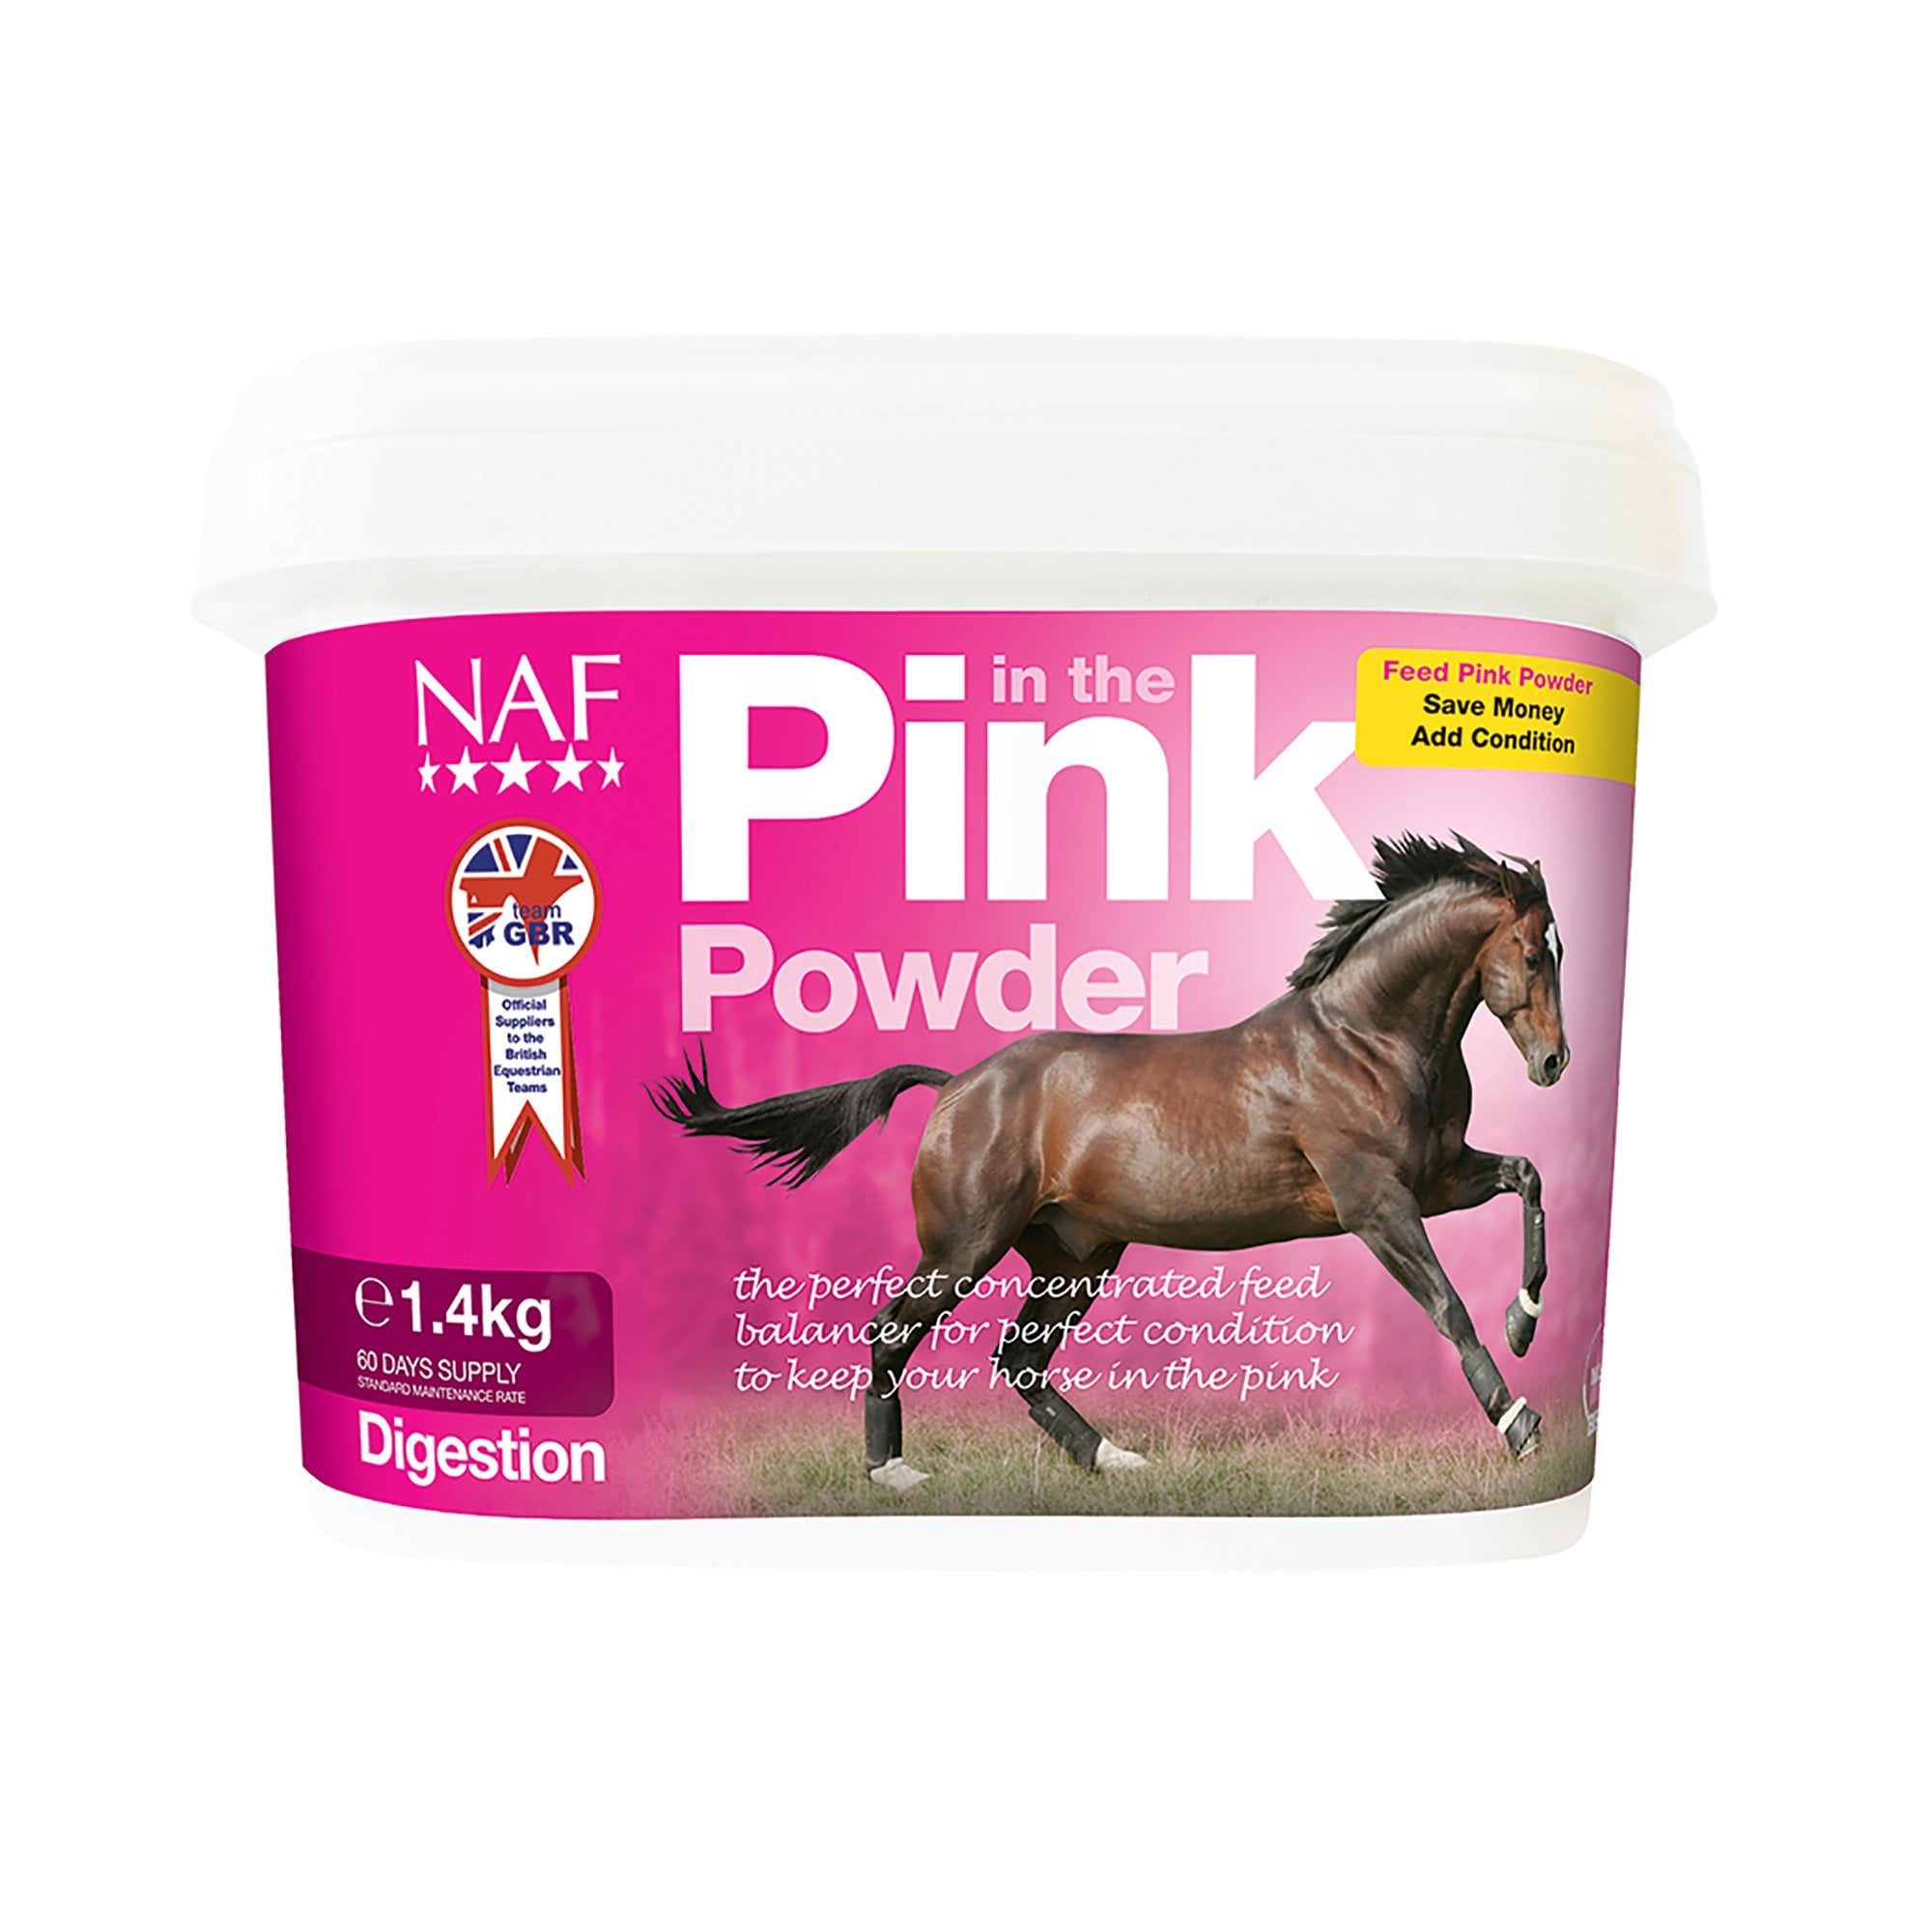 naf-natural-animal-feeds-pink-powder-horse-supplement-1-4kg-p13753-28325-zoom.jpg